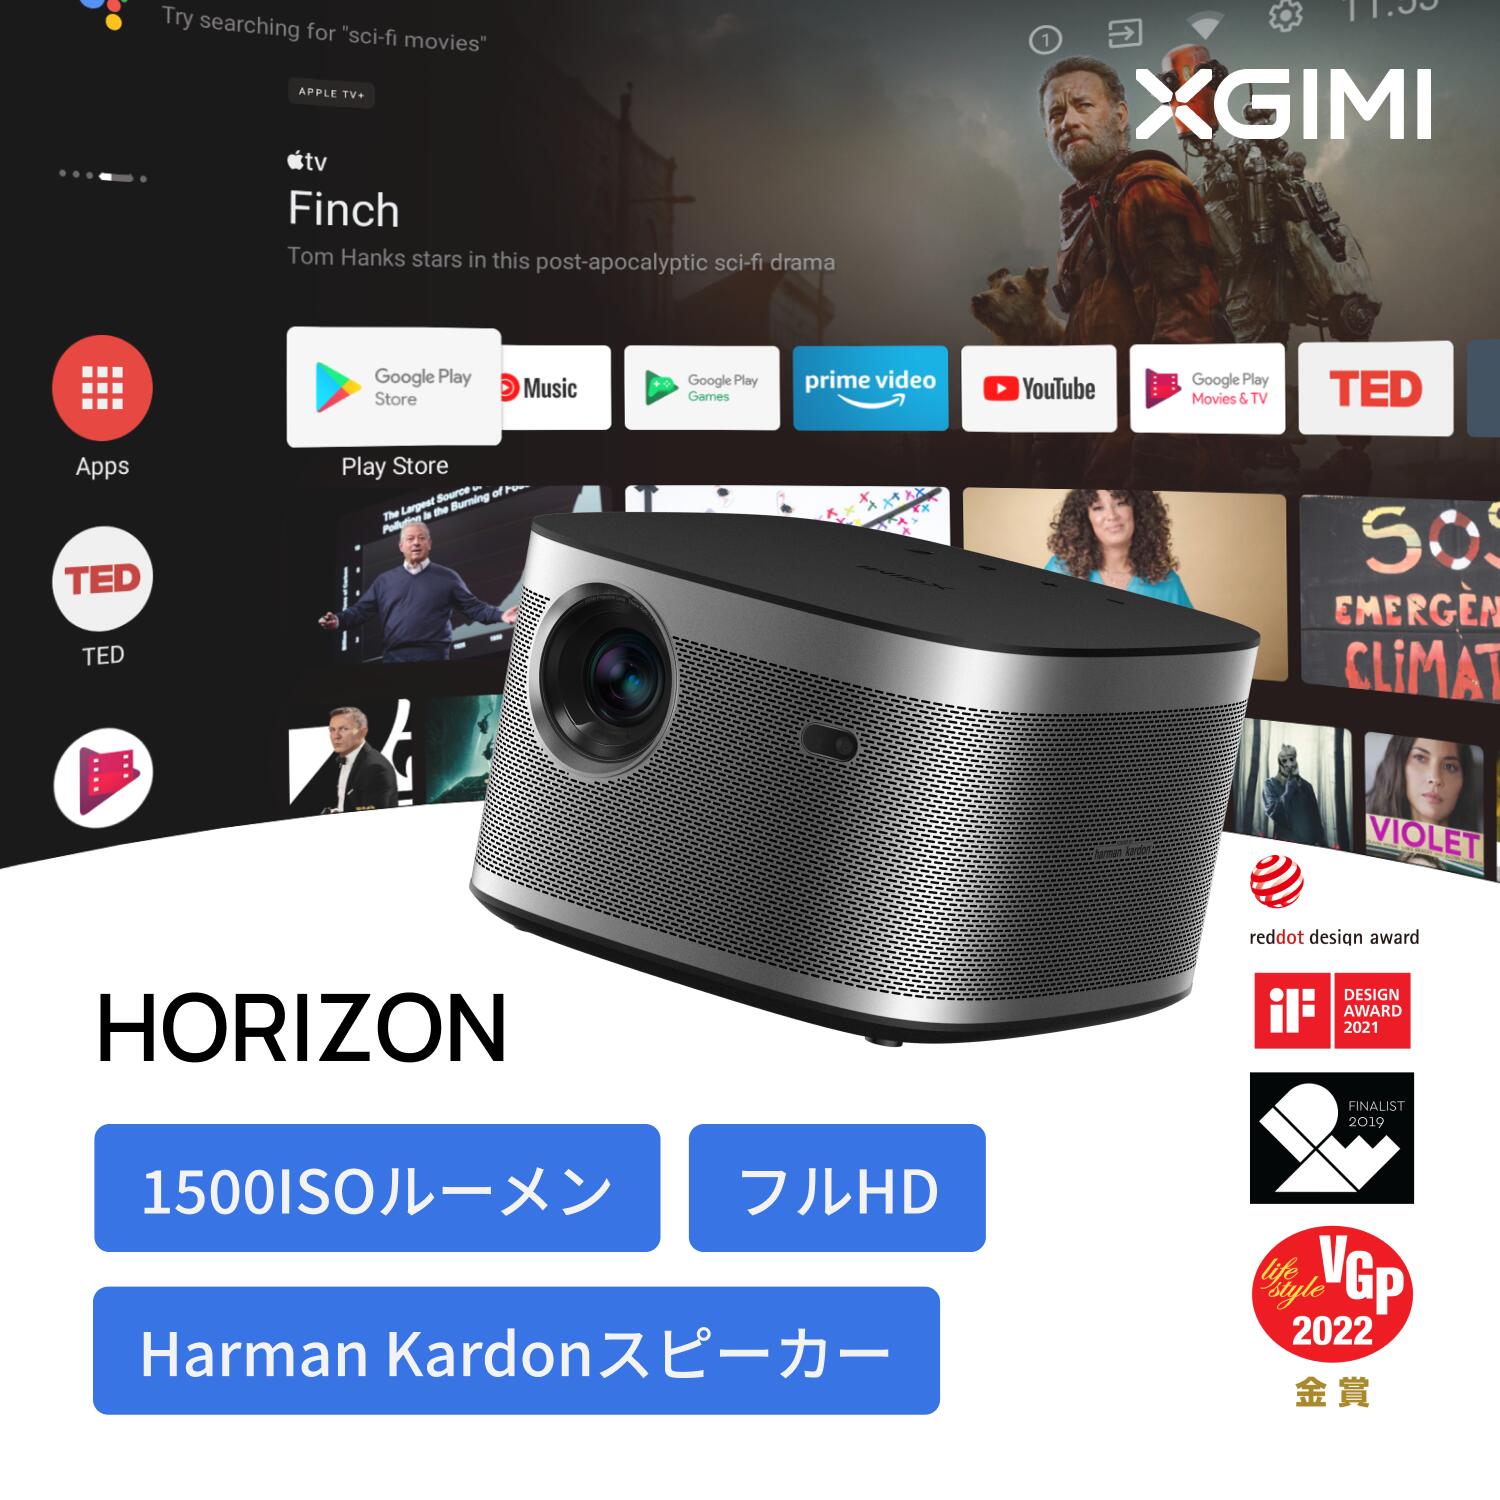 【5/30限定 15%OFF】XGIMI HORIZON 高輝度 ホームプロジェクター フルHD 1080p 家庭用 Android TV 10.0搭載 ネイティブ解像度 【Harman Kardonスピーカー / 200インチ投影 / bluetooth対応 / 自動台形補正】